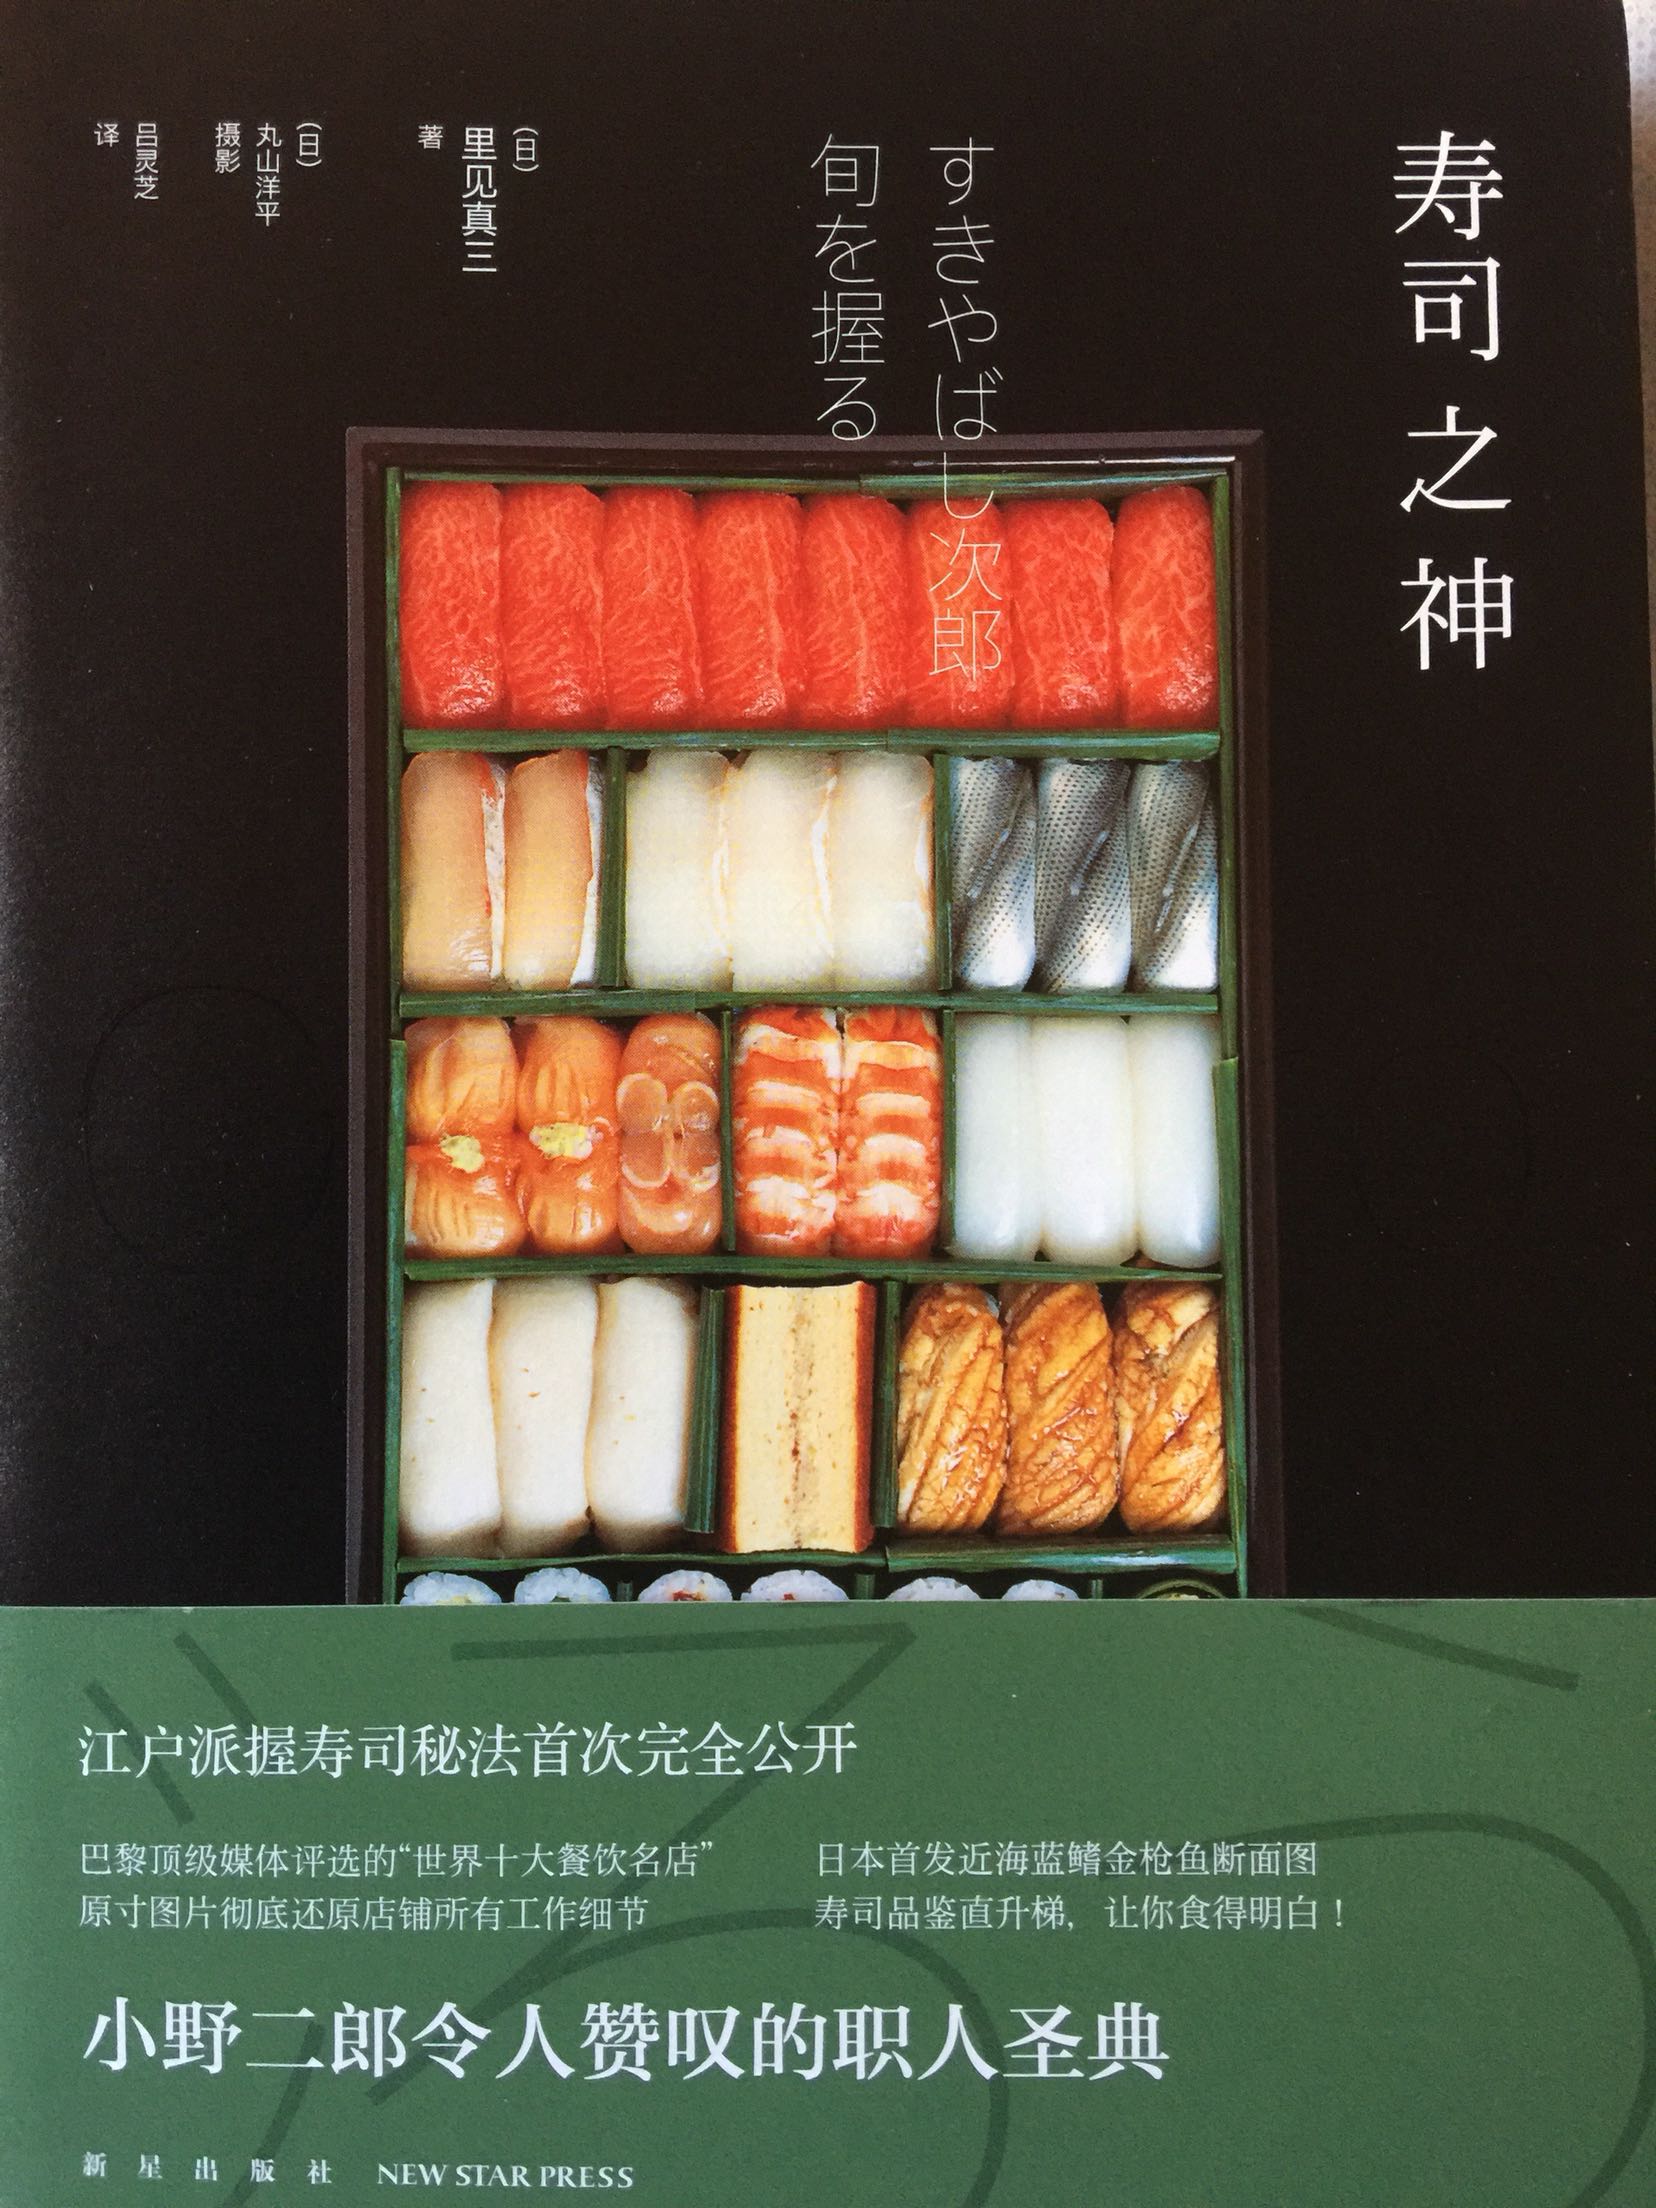 做日料的朋友也坚信食材是日料的关键，但这本书分享的是一个匠人的看家寿司握法。还没有细读。有大量讲解图片。